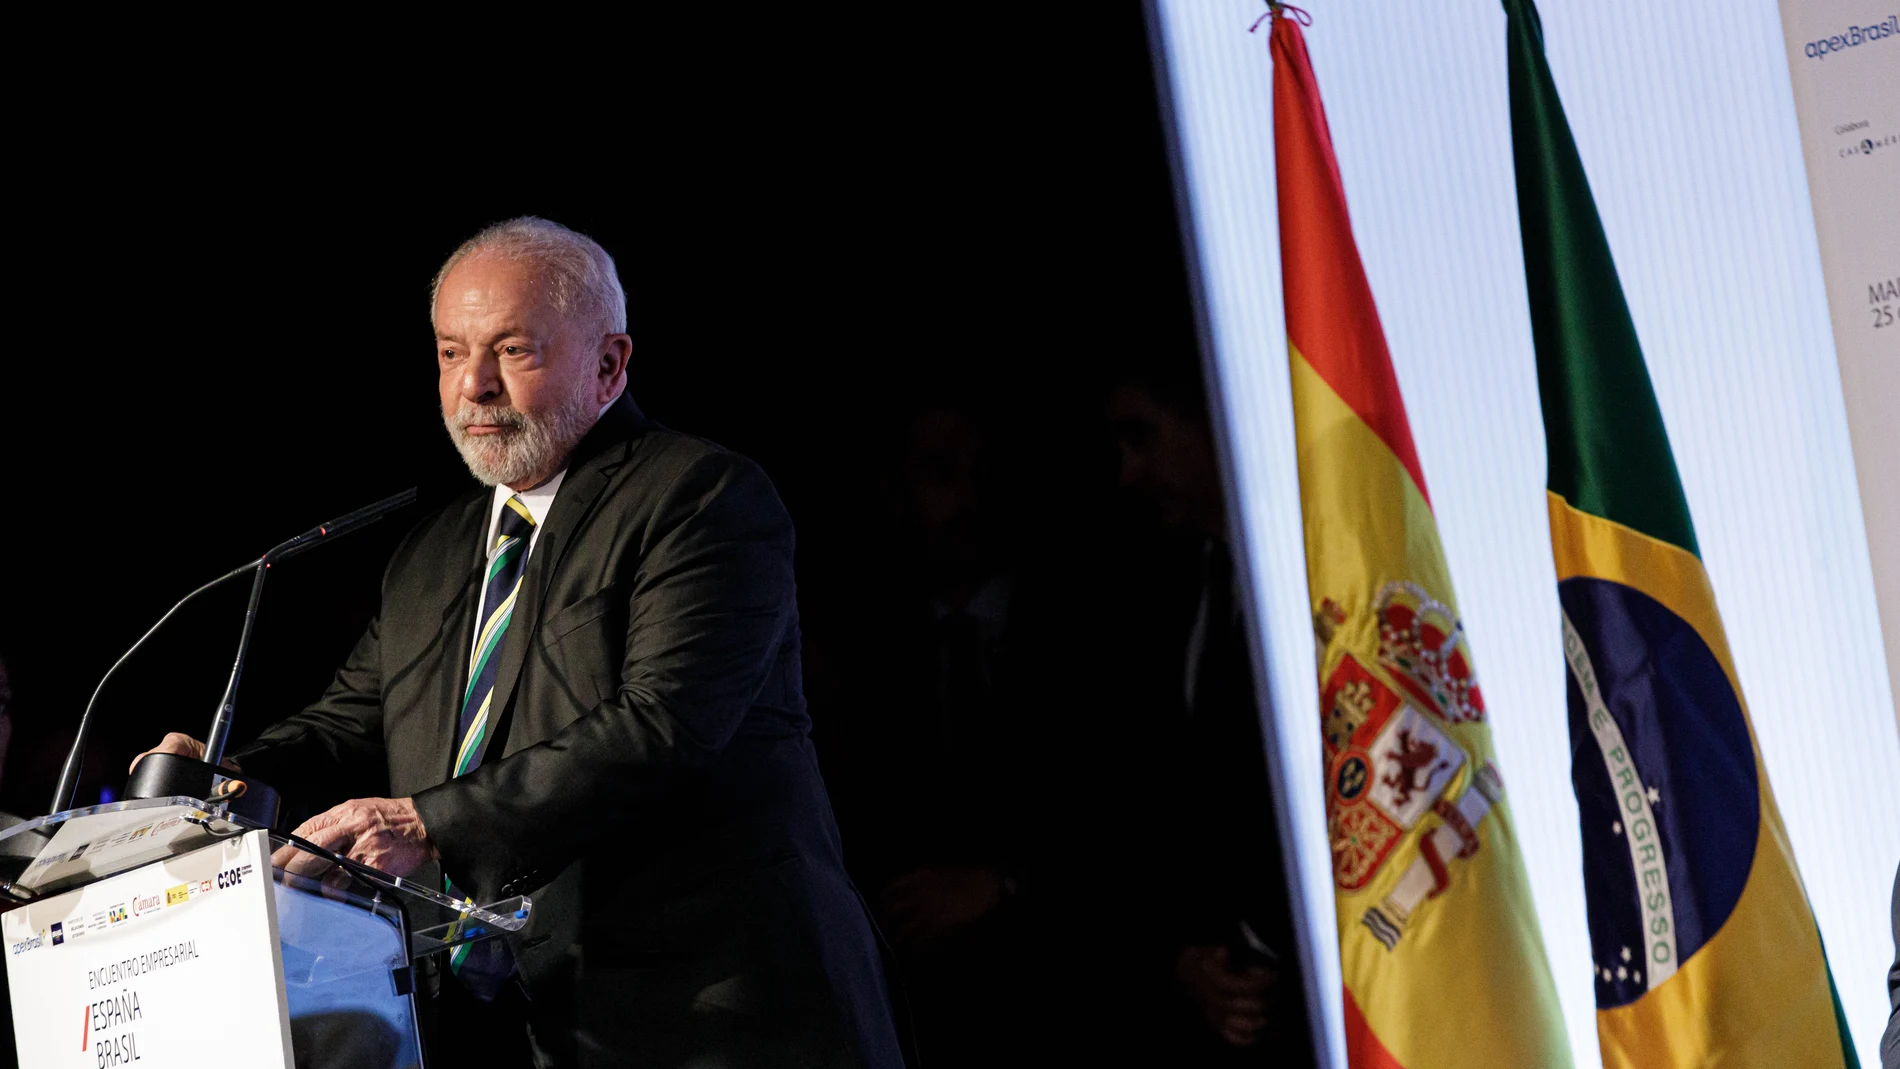 El presidente de Brasil, Lula da Silva, en la Casa de América de Madrid